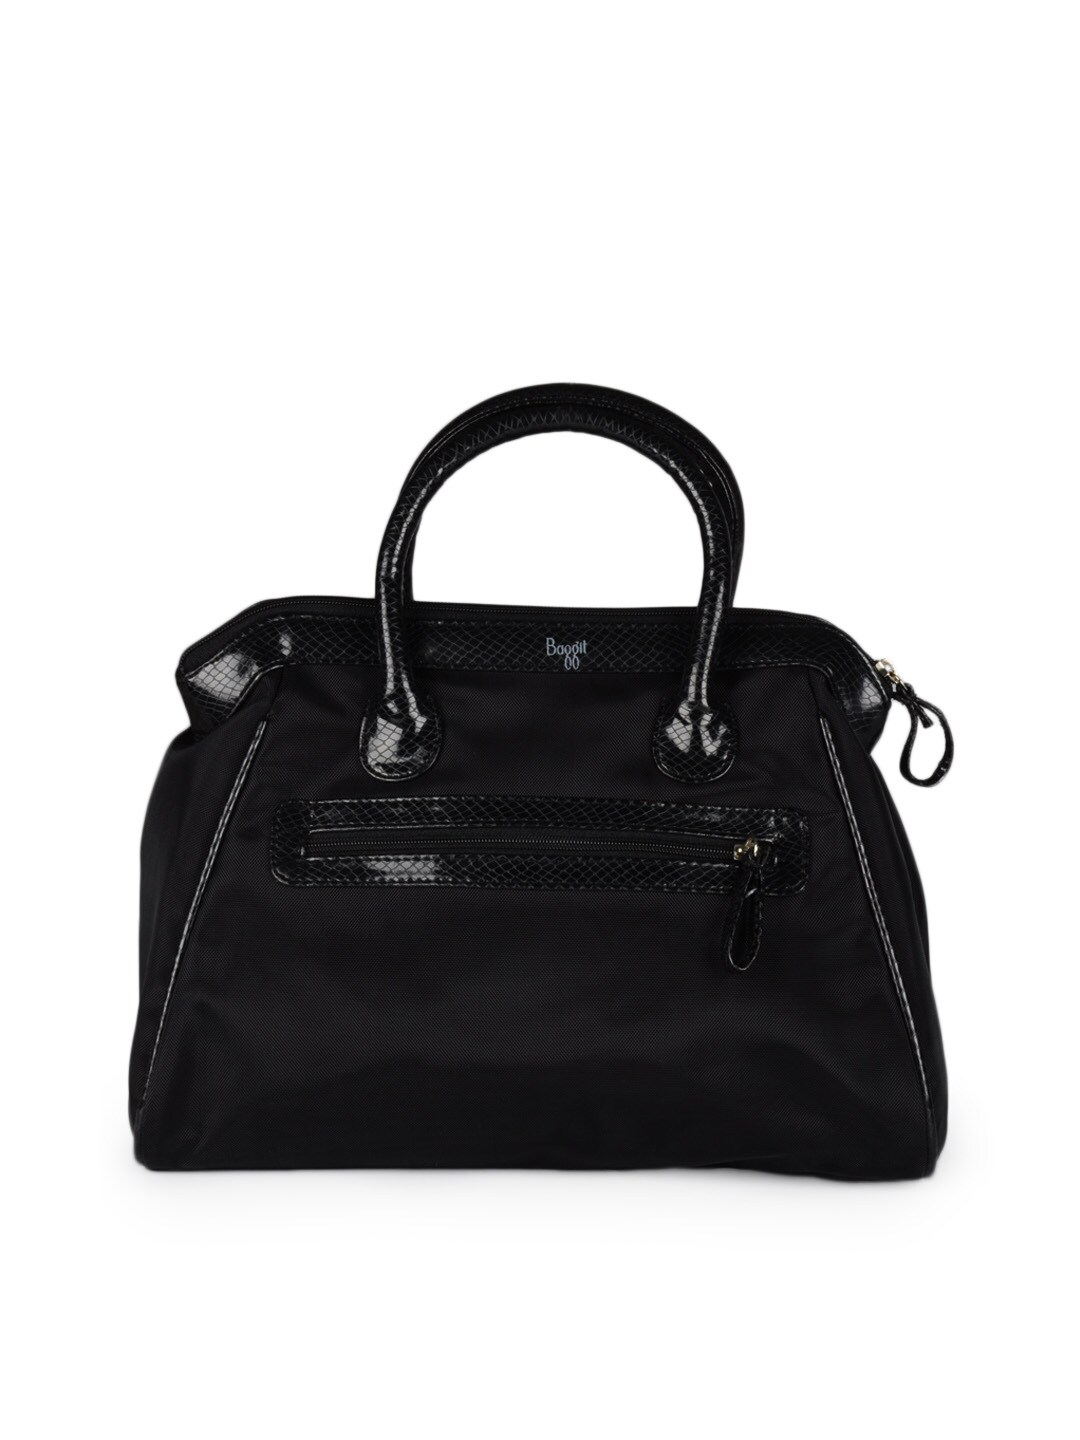 Baggit Women Black Handbag